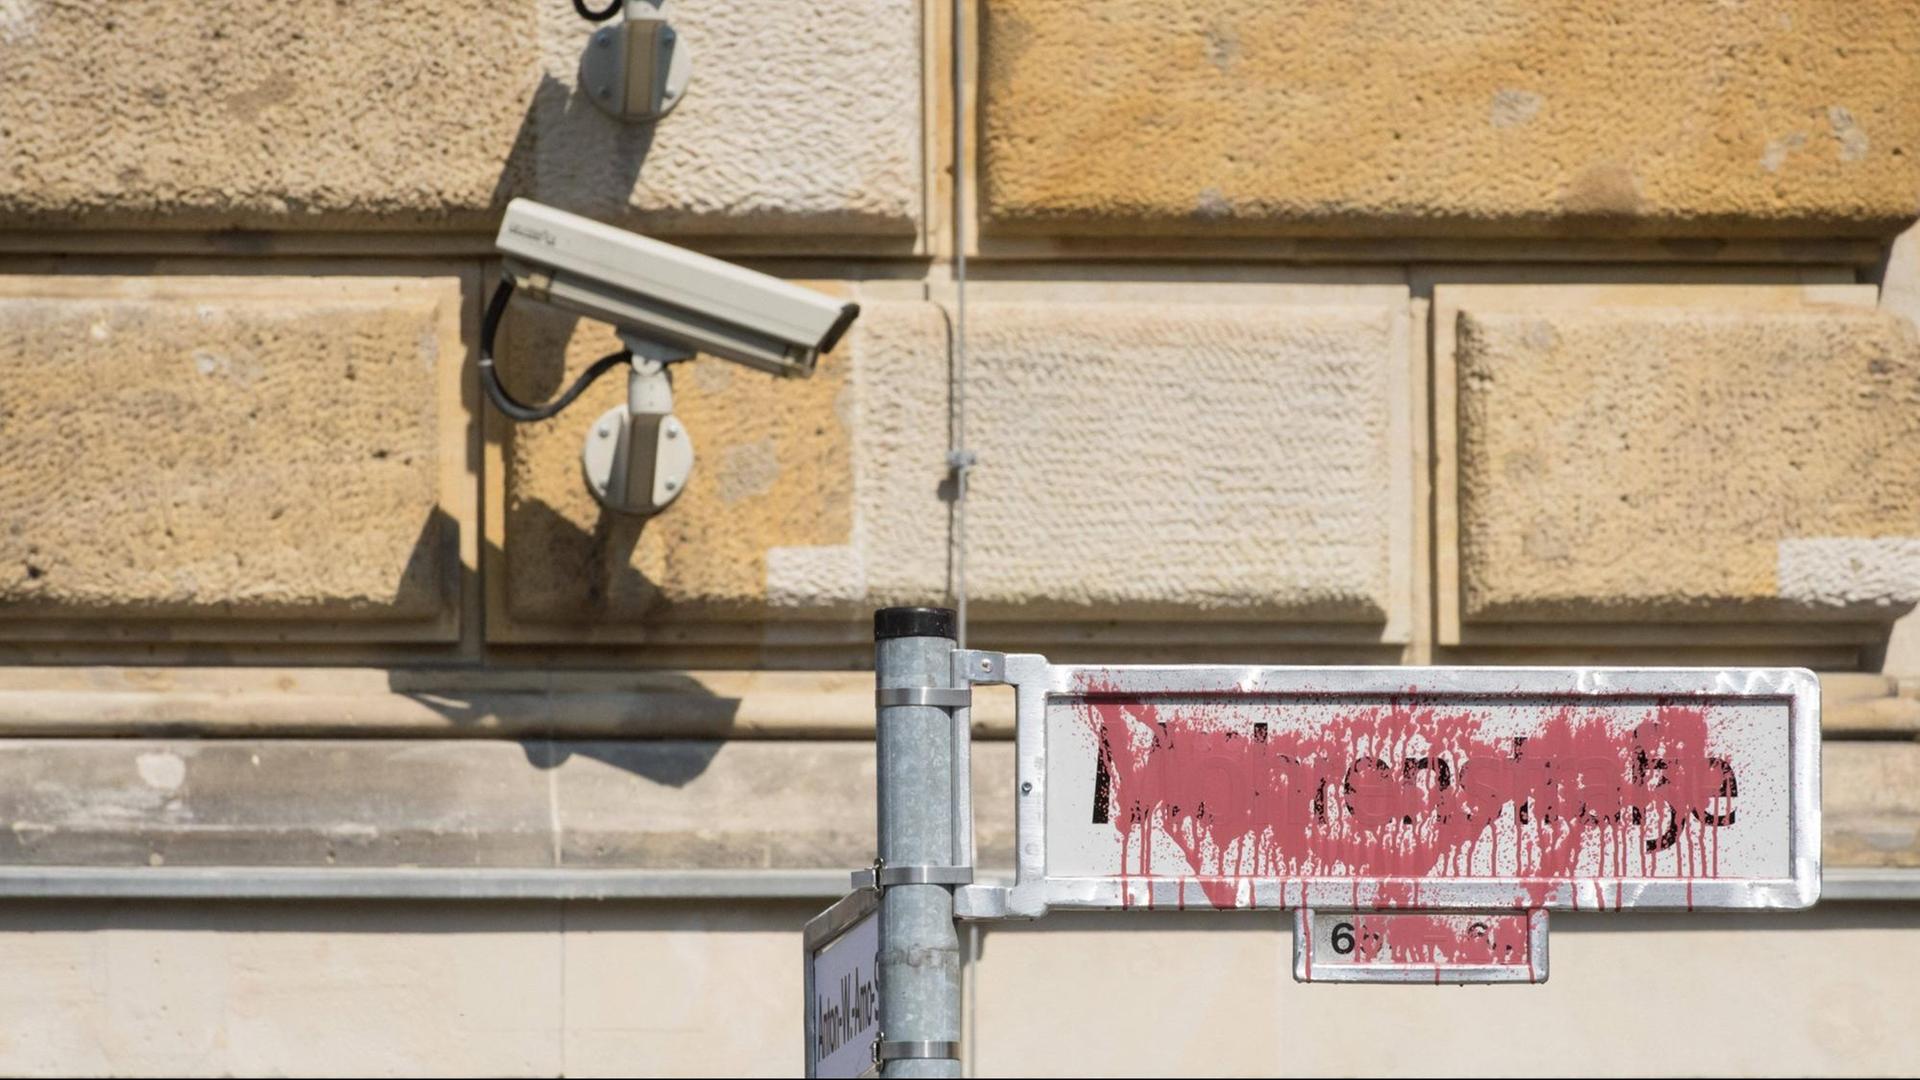 Im Bild ist das mit rote Farbe besprühte Straßenschild Mohrenstraße zu sehen. Darüber hängt an einer Hauswand eine Überwachungskamera.